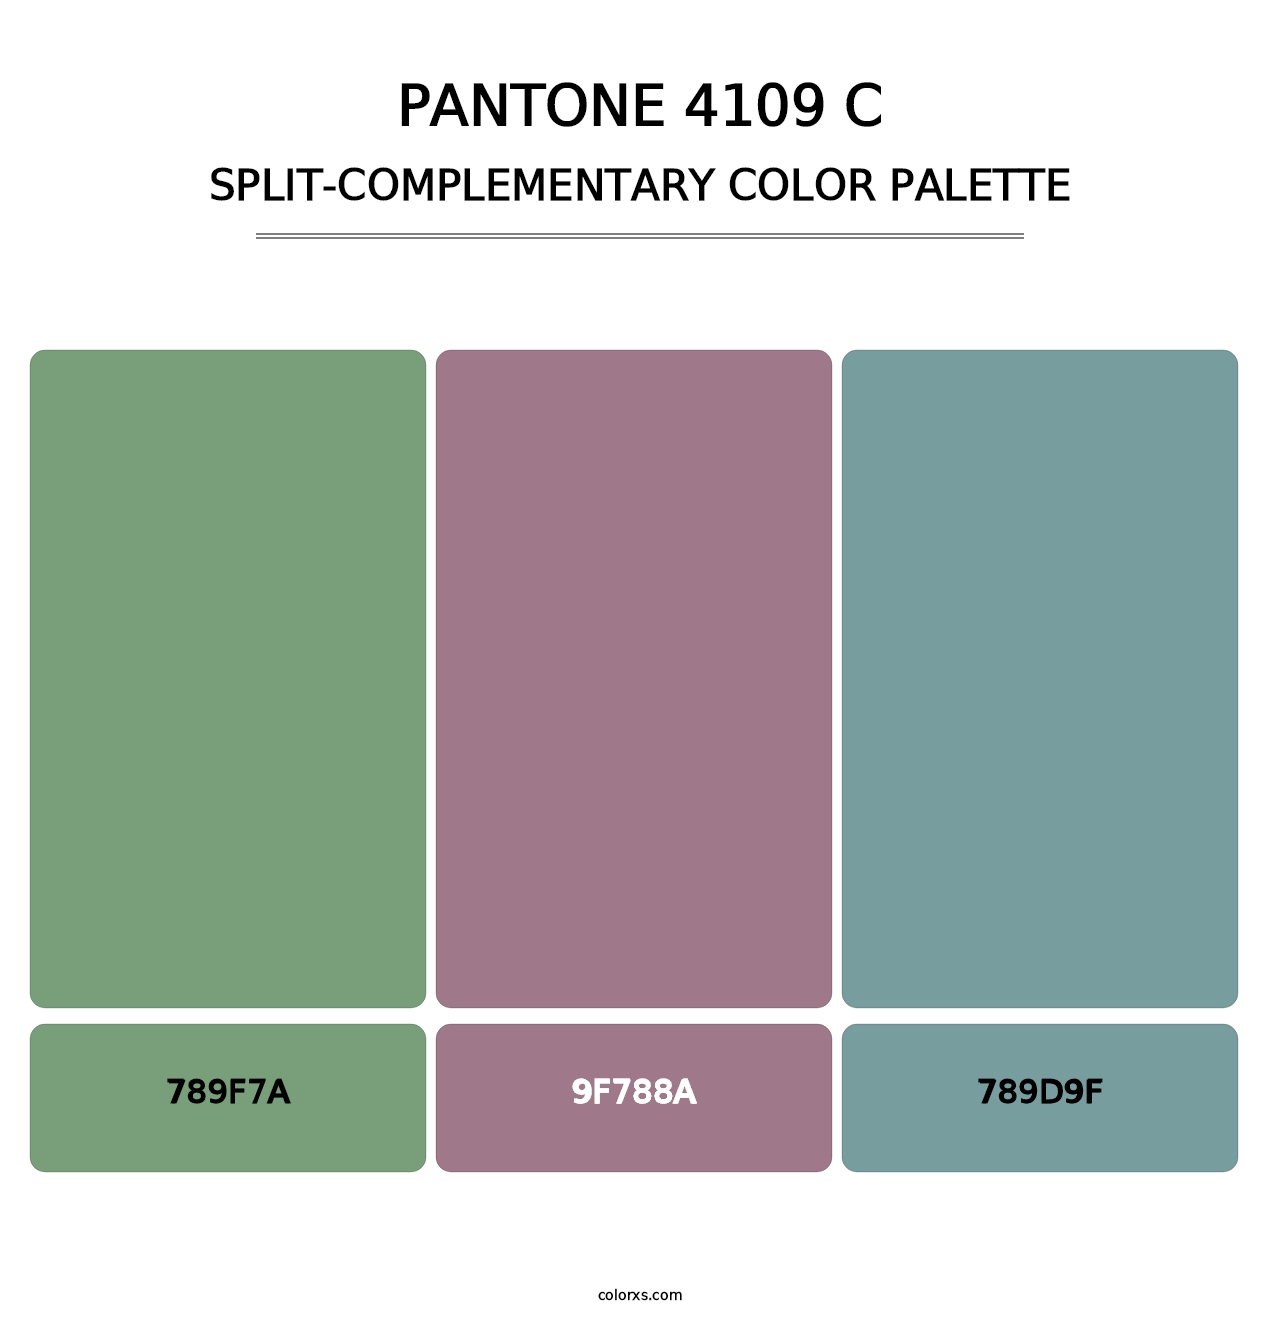 PANTONE 4109 C - Split-Complementary Color Palette